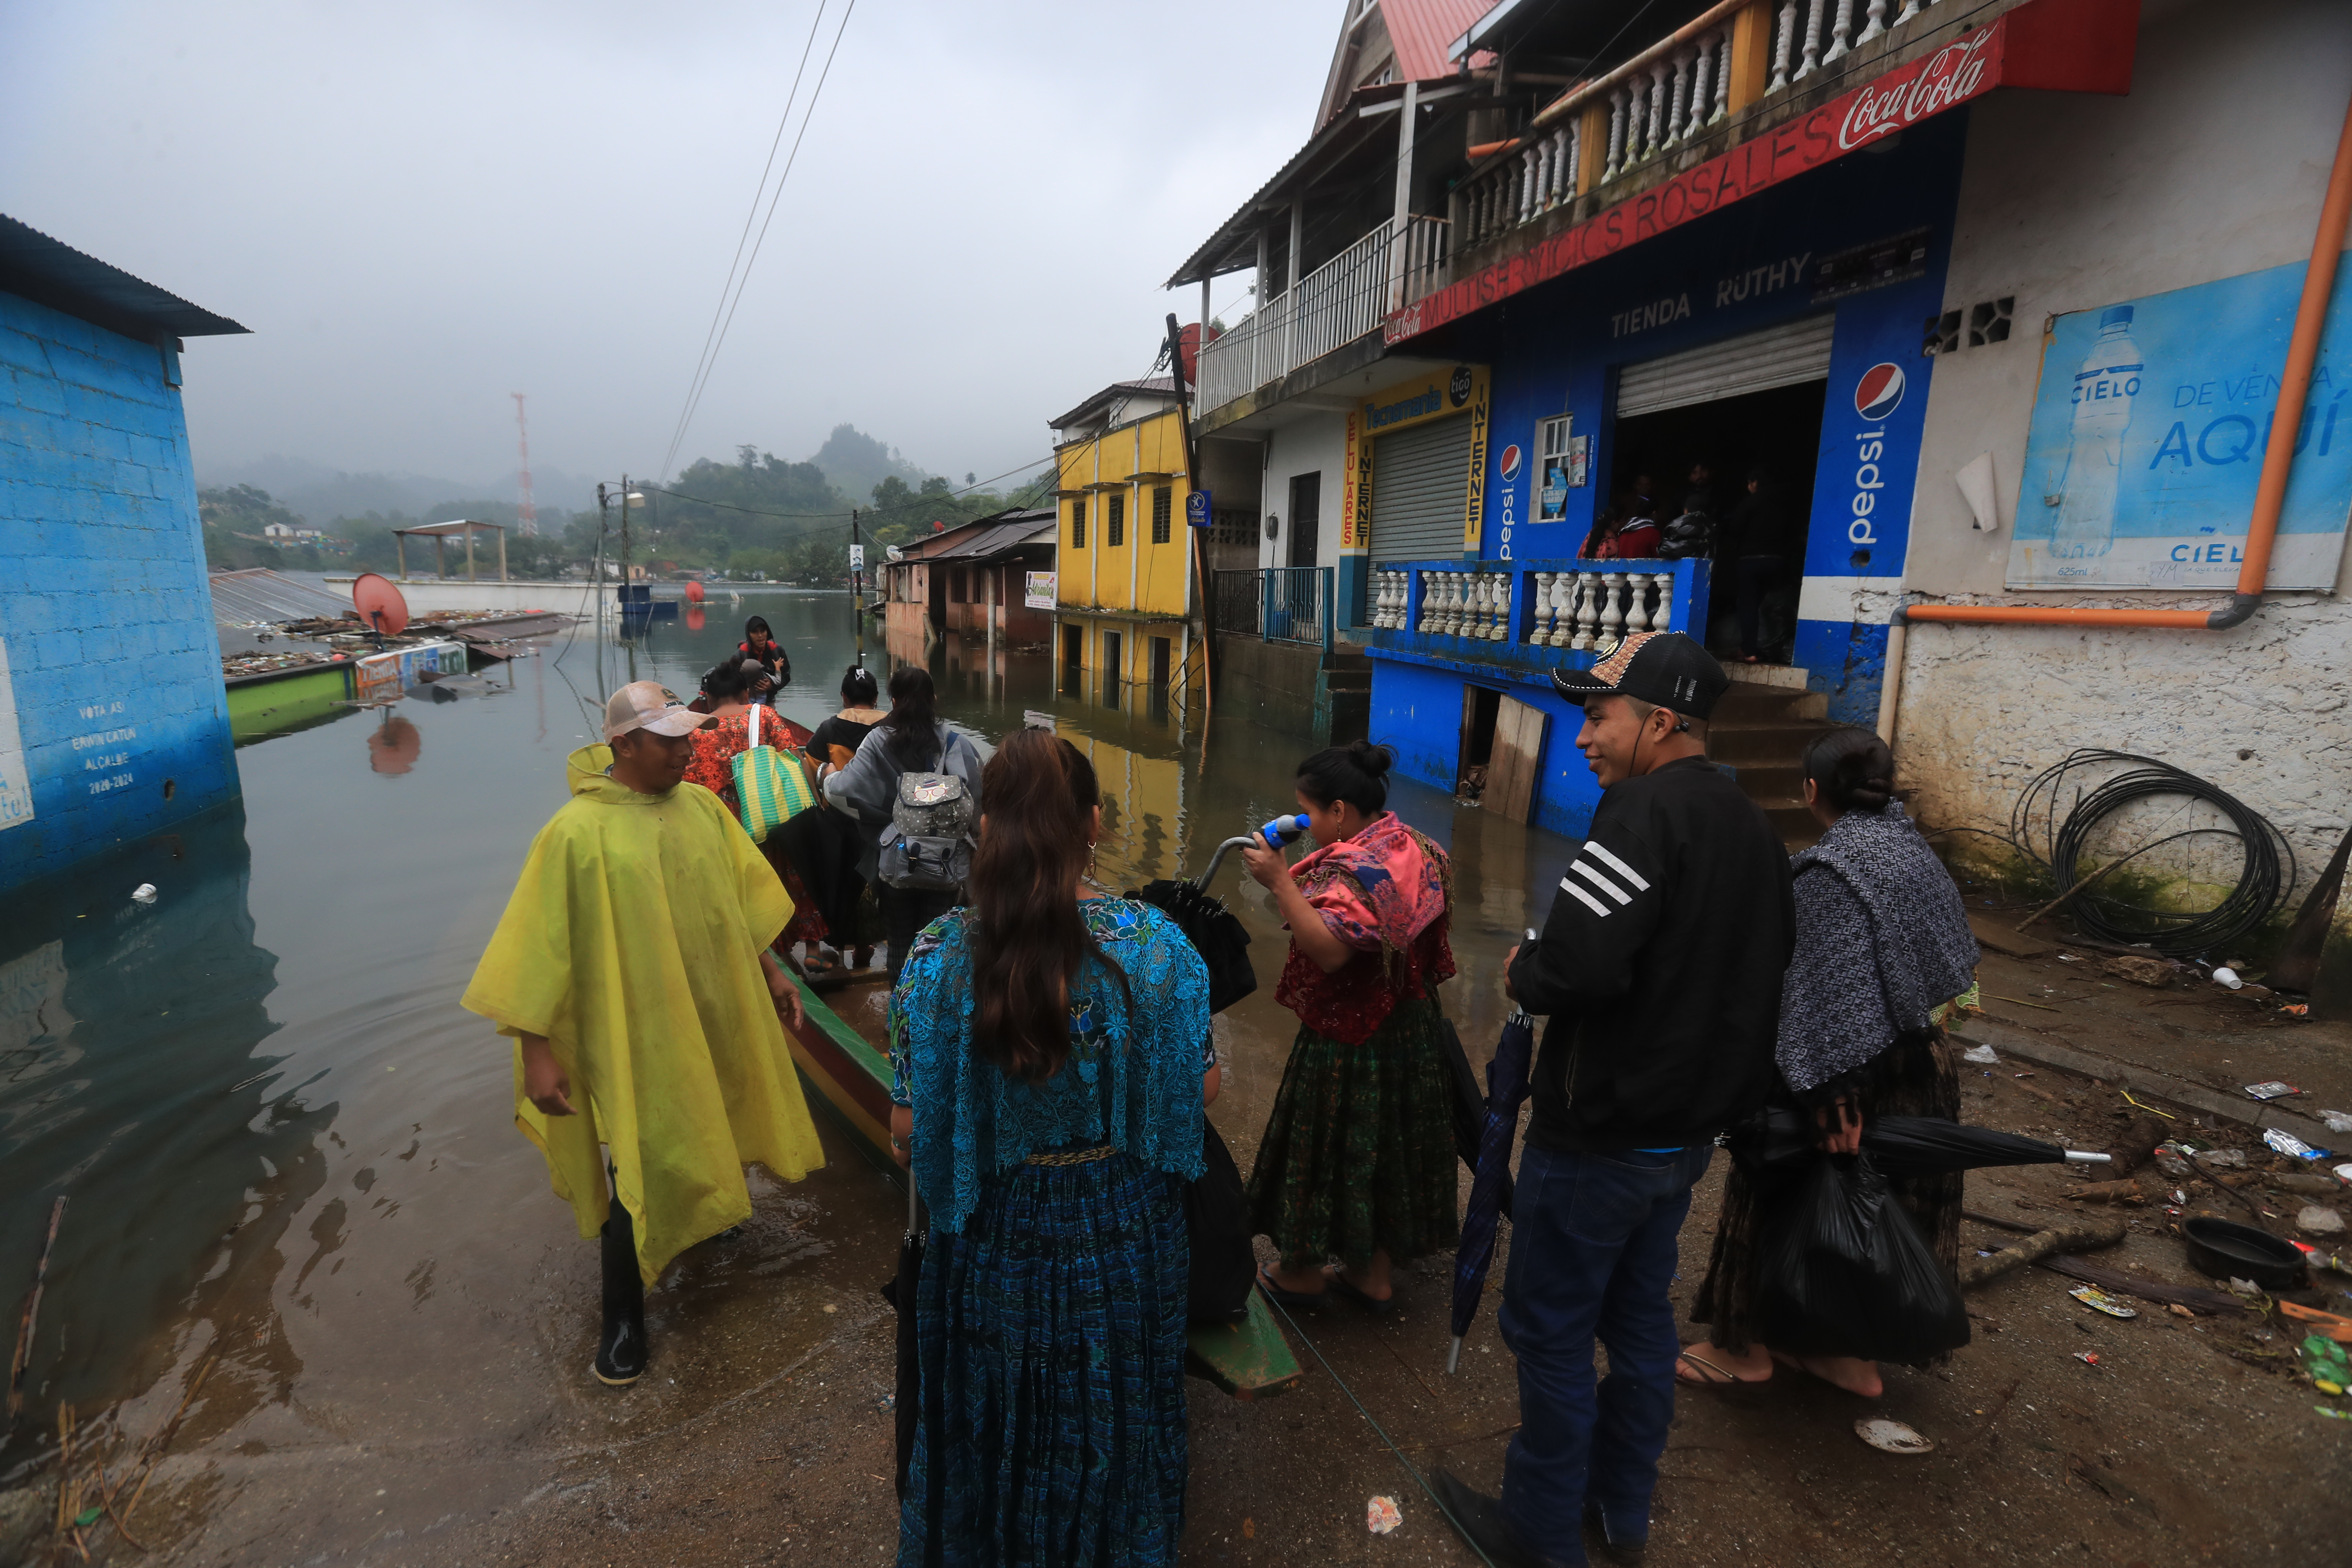 Campur, en Alta Verapaz, es una de las comunidades que más daños sufrió luego del paso de las tormentas Eta y Iota. (Foto Prensa Libre: Juan Diego González)